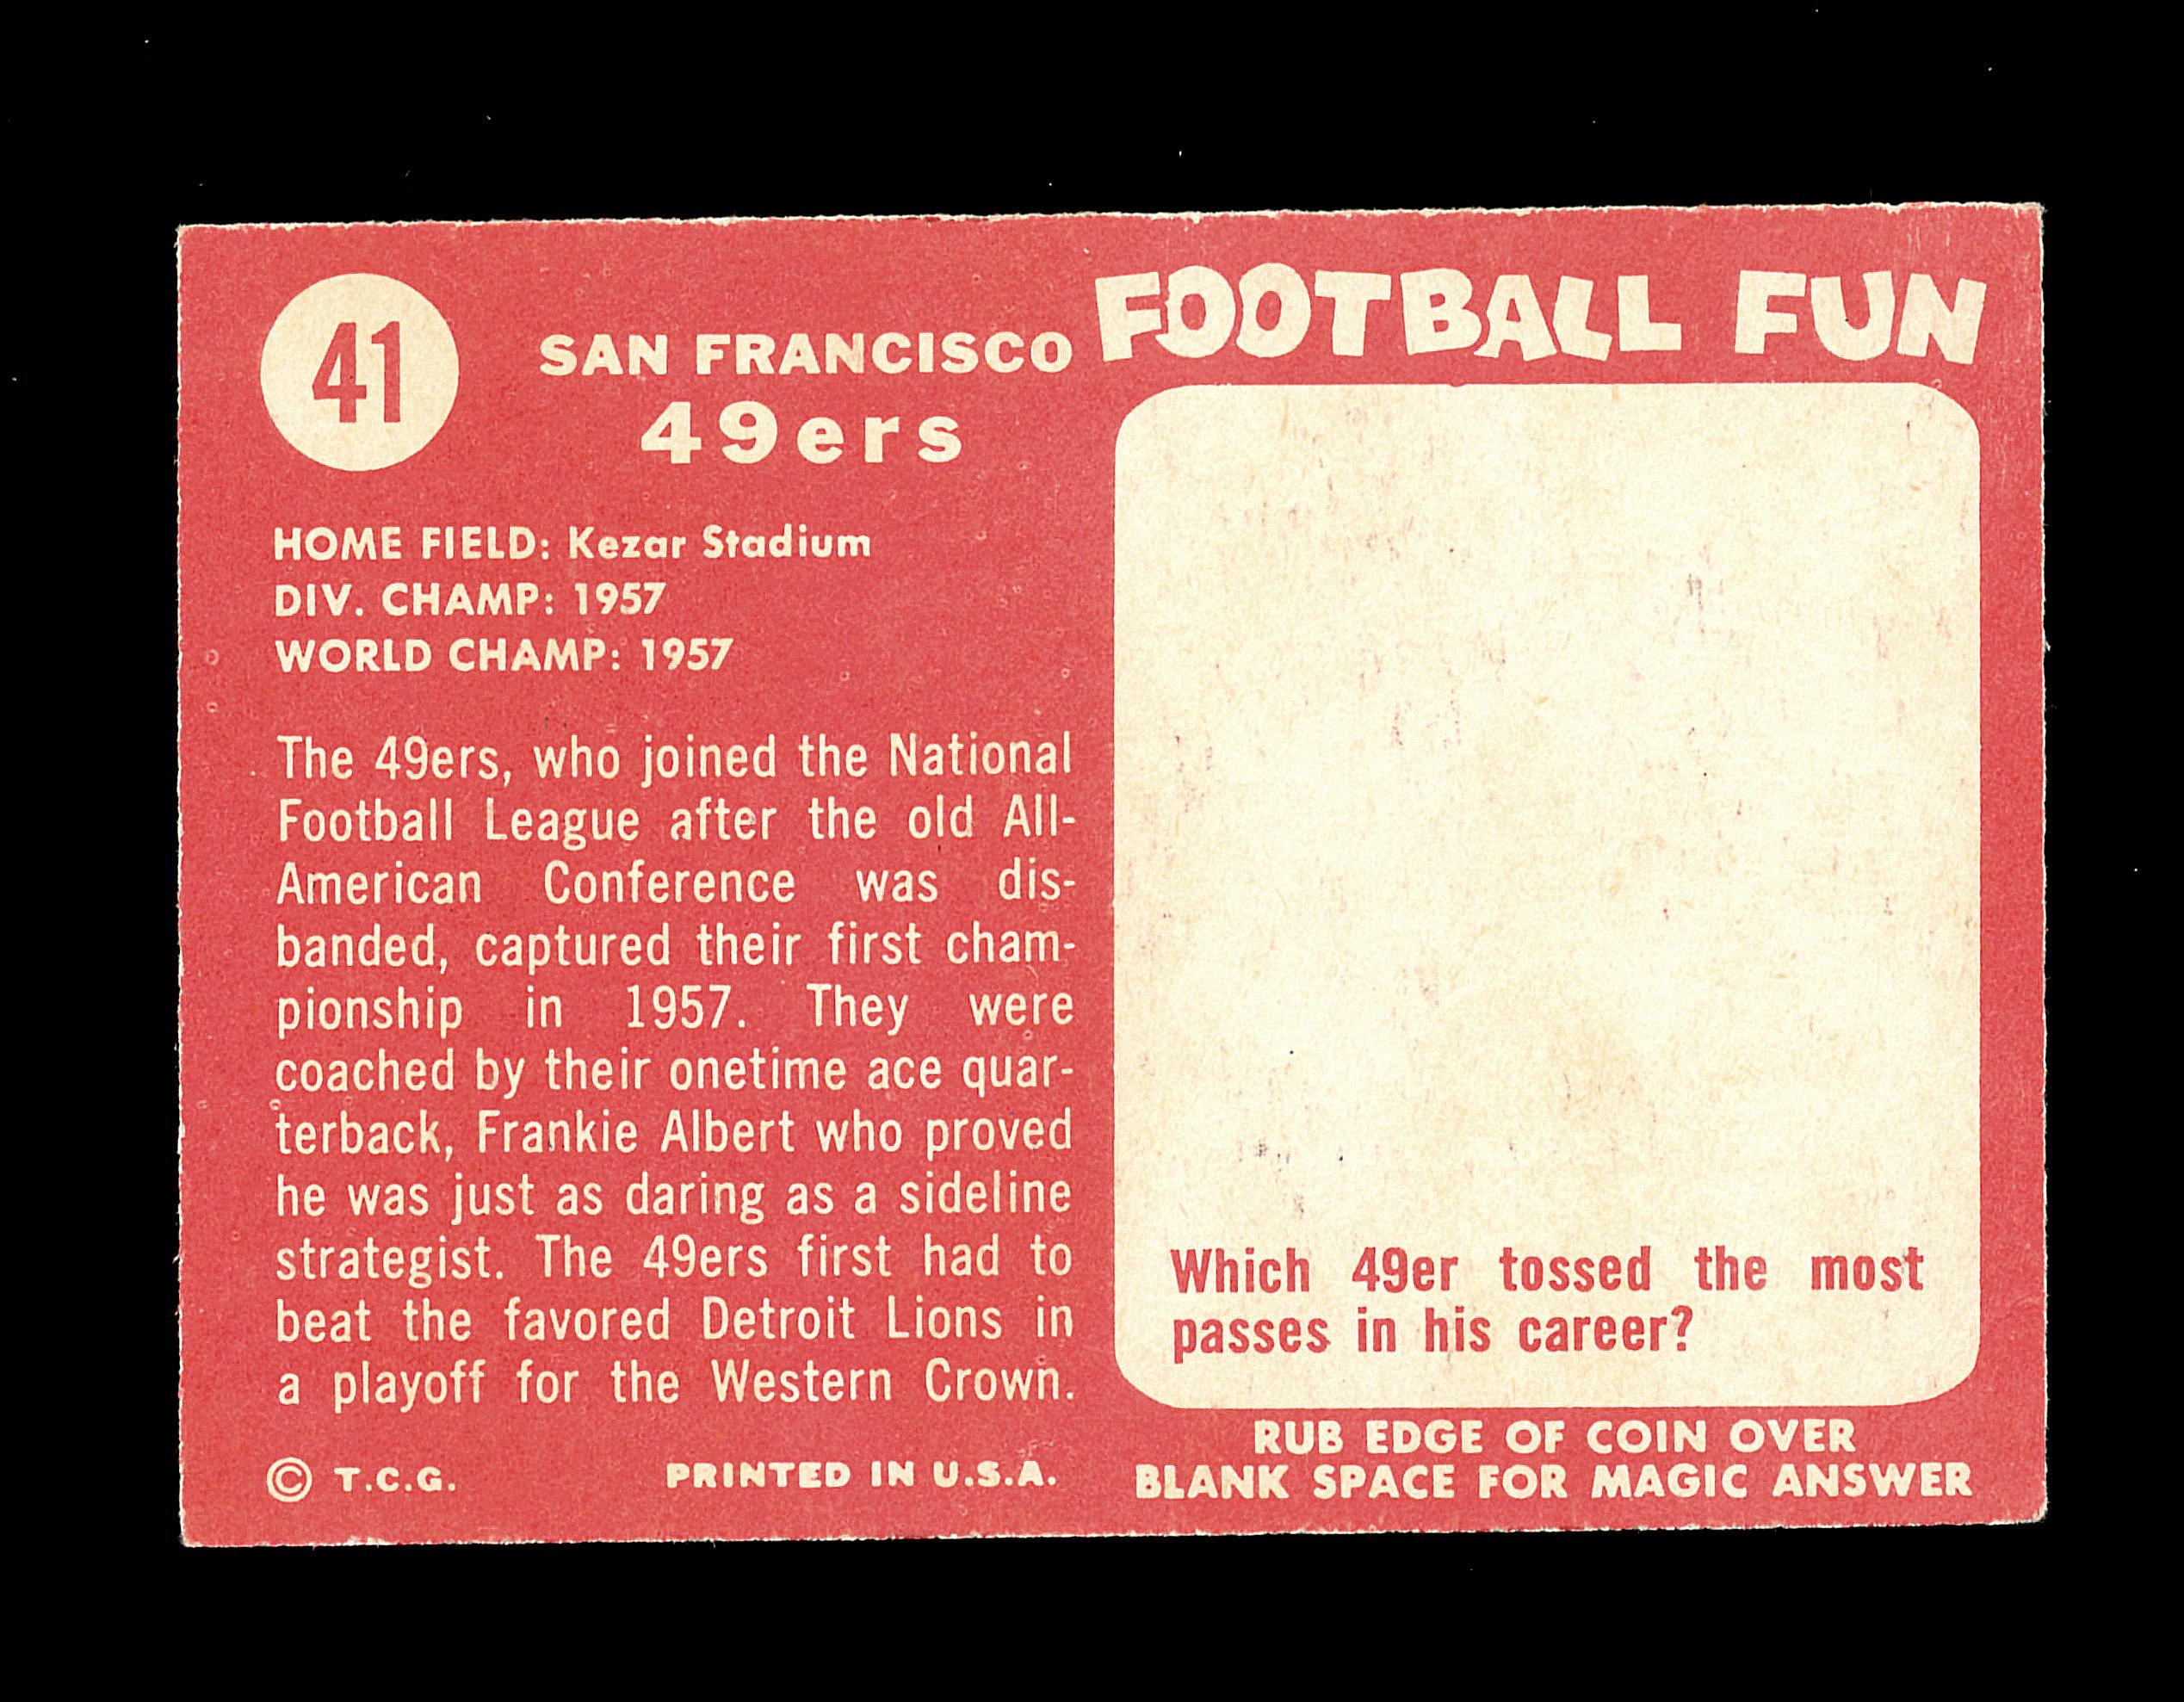 1958 Topps Football Cards #41 San Francisco 49ers Team Card